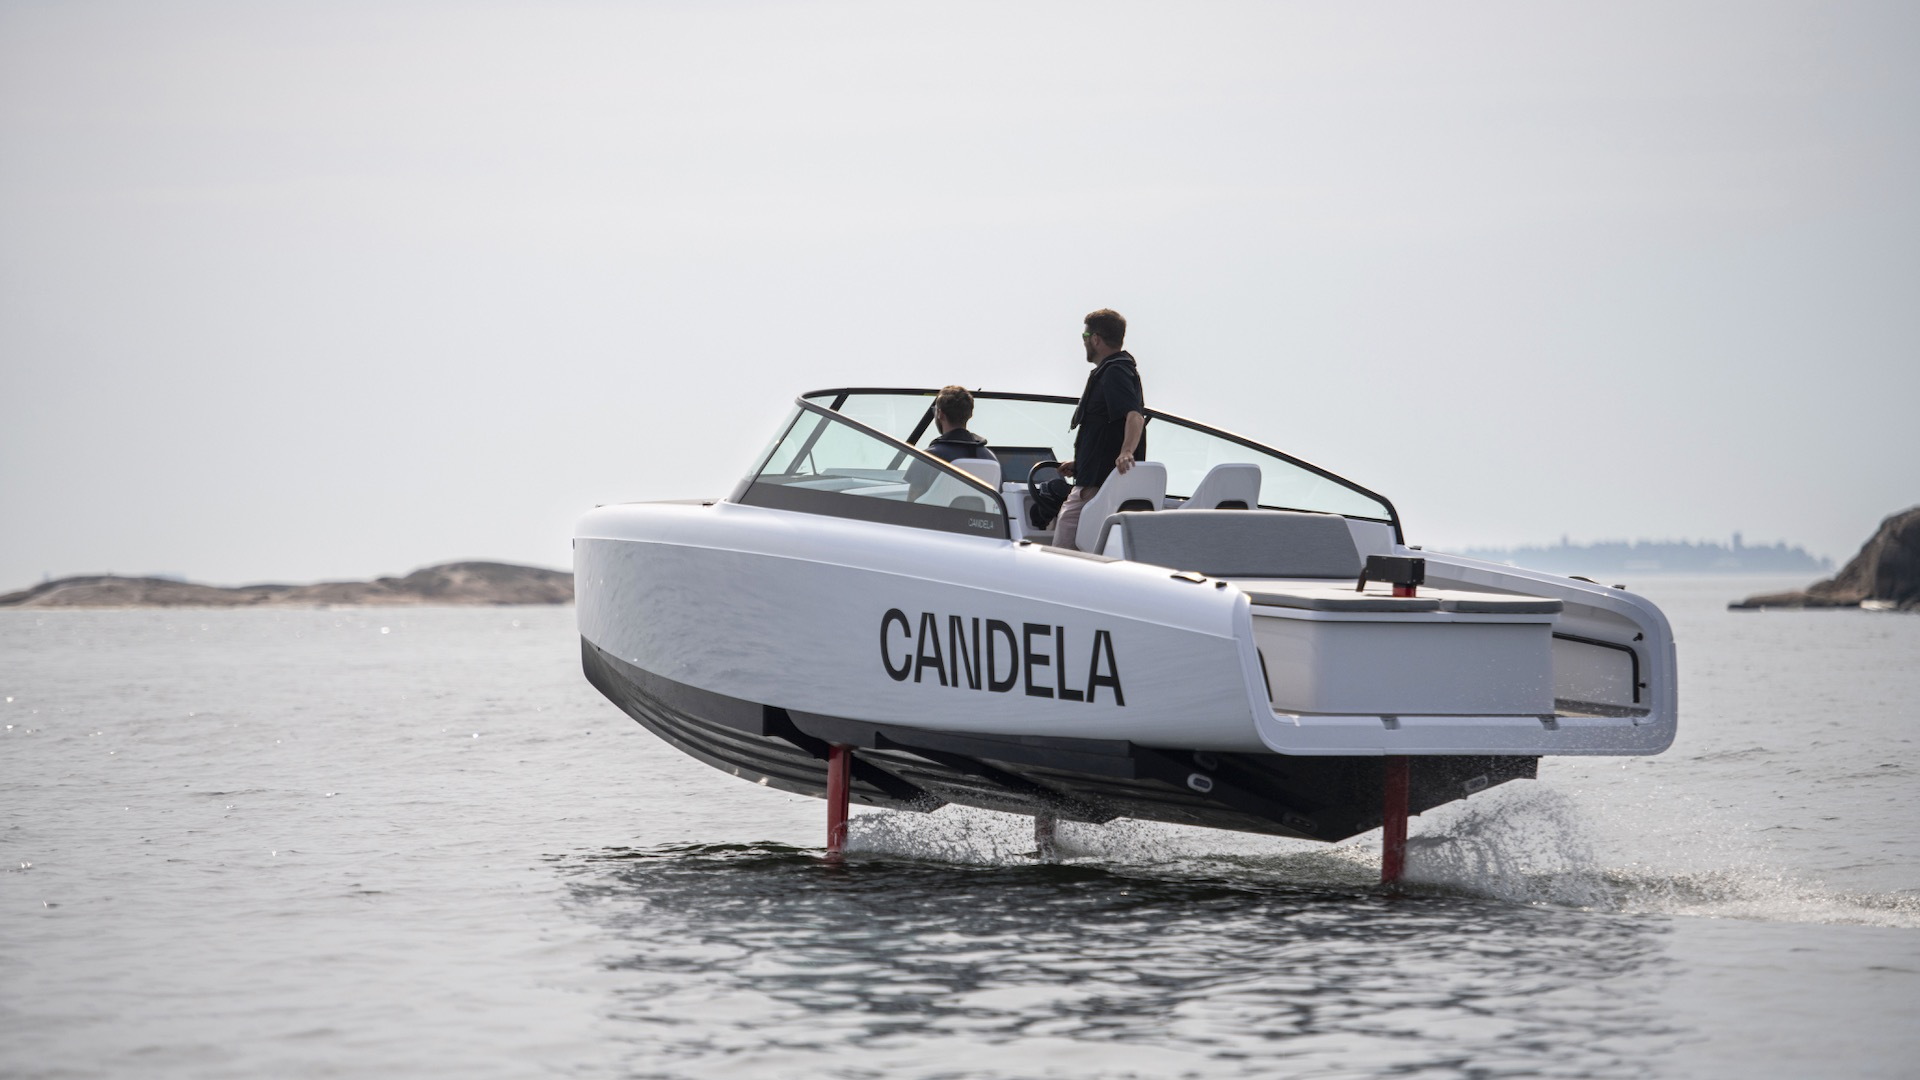 Candela electric boat